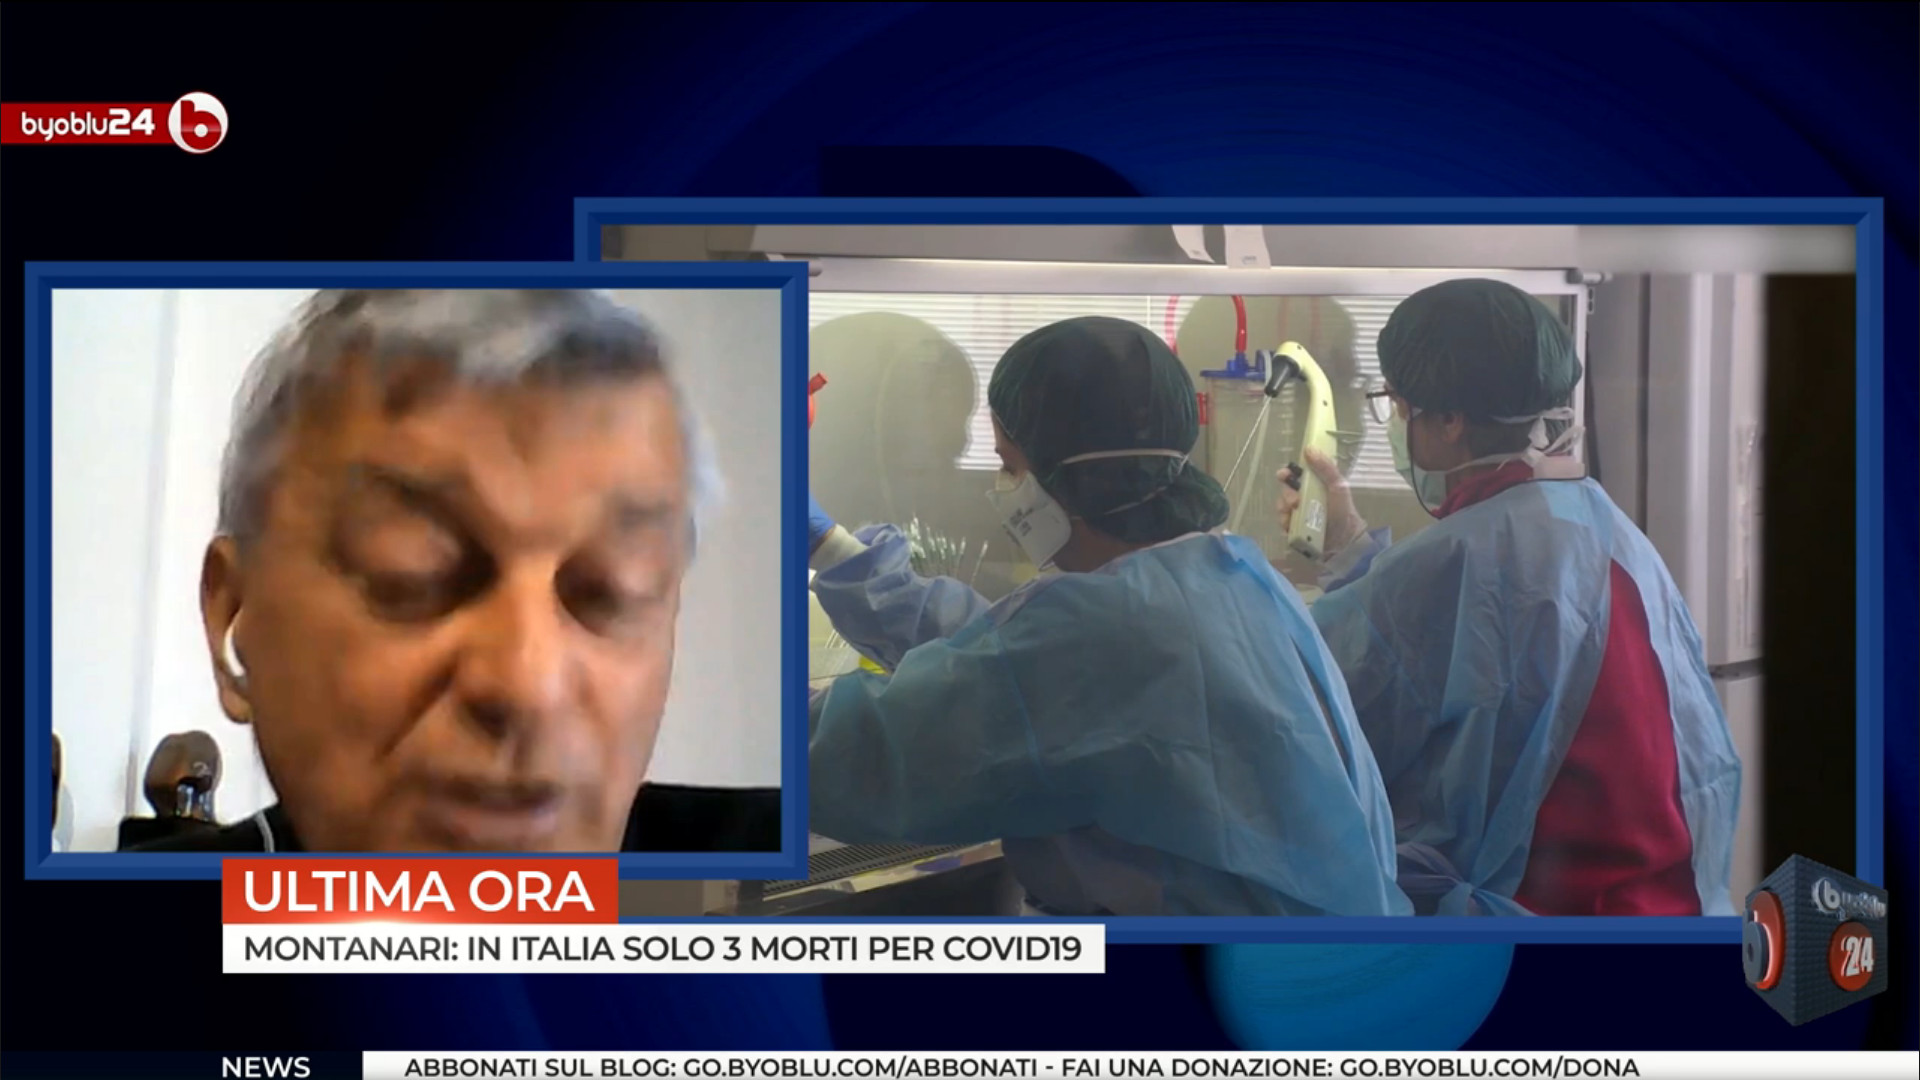 CLICCA QUI PER VEDERE IL VIDEO "Stefano Montanari, Byoblu, morti da coronavirus covid-19"